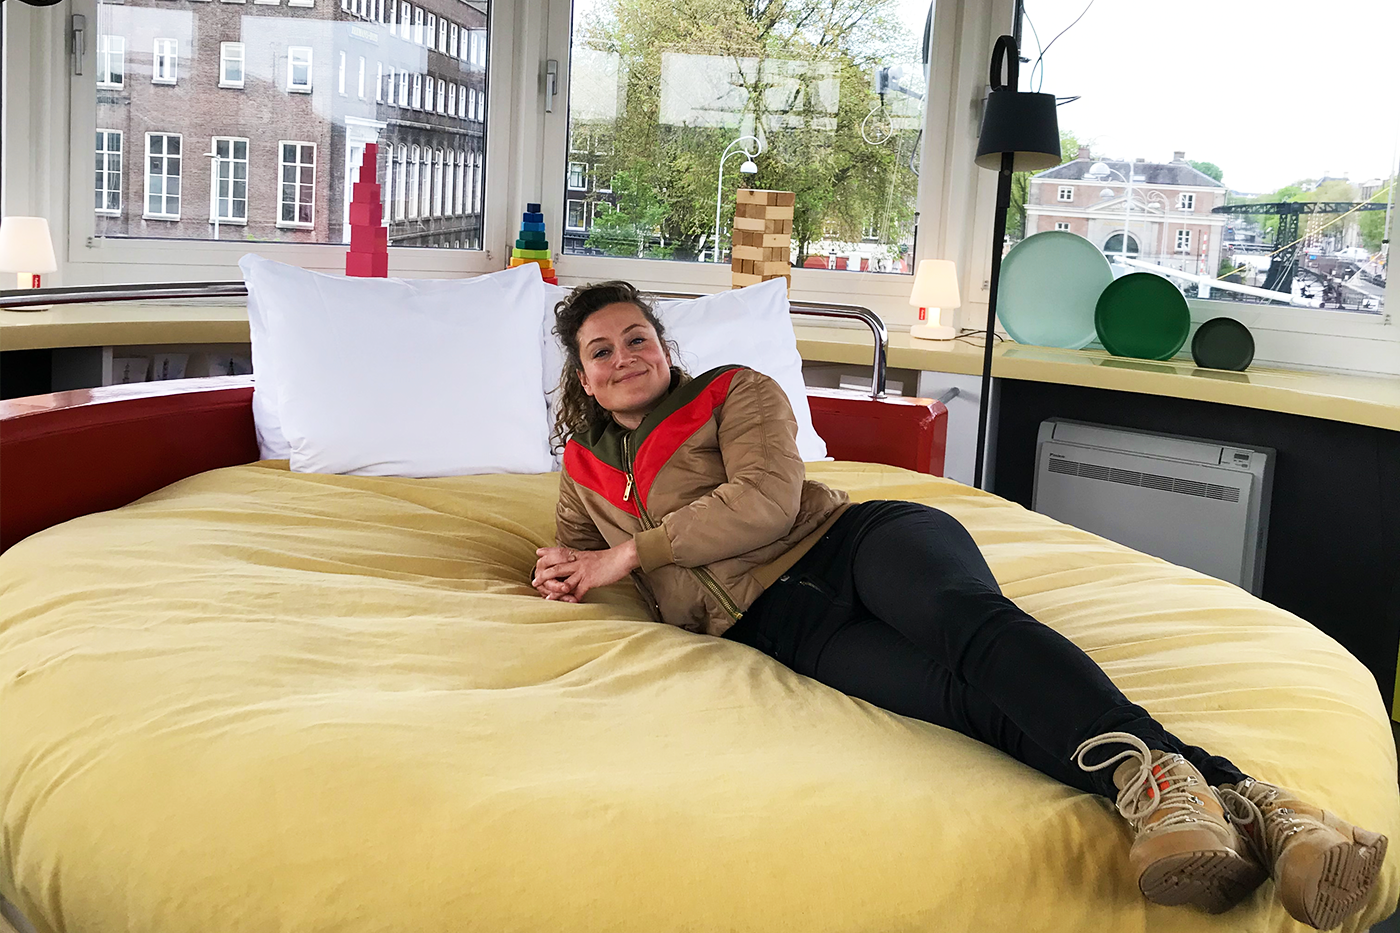 Nienke ligt op een bed in een brugwachtershuisje in Amsterdam